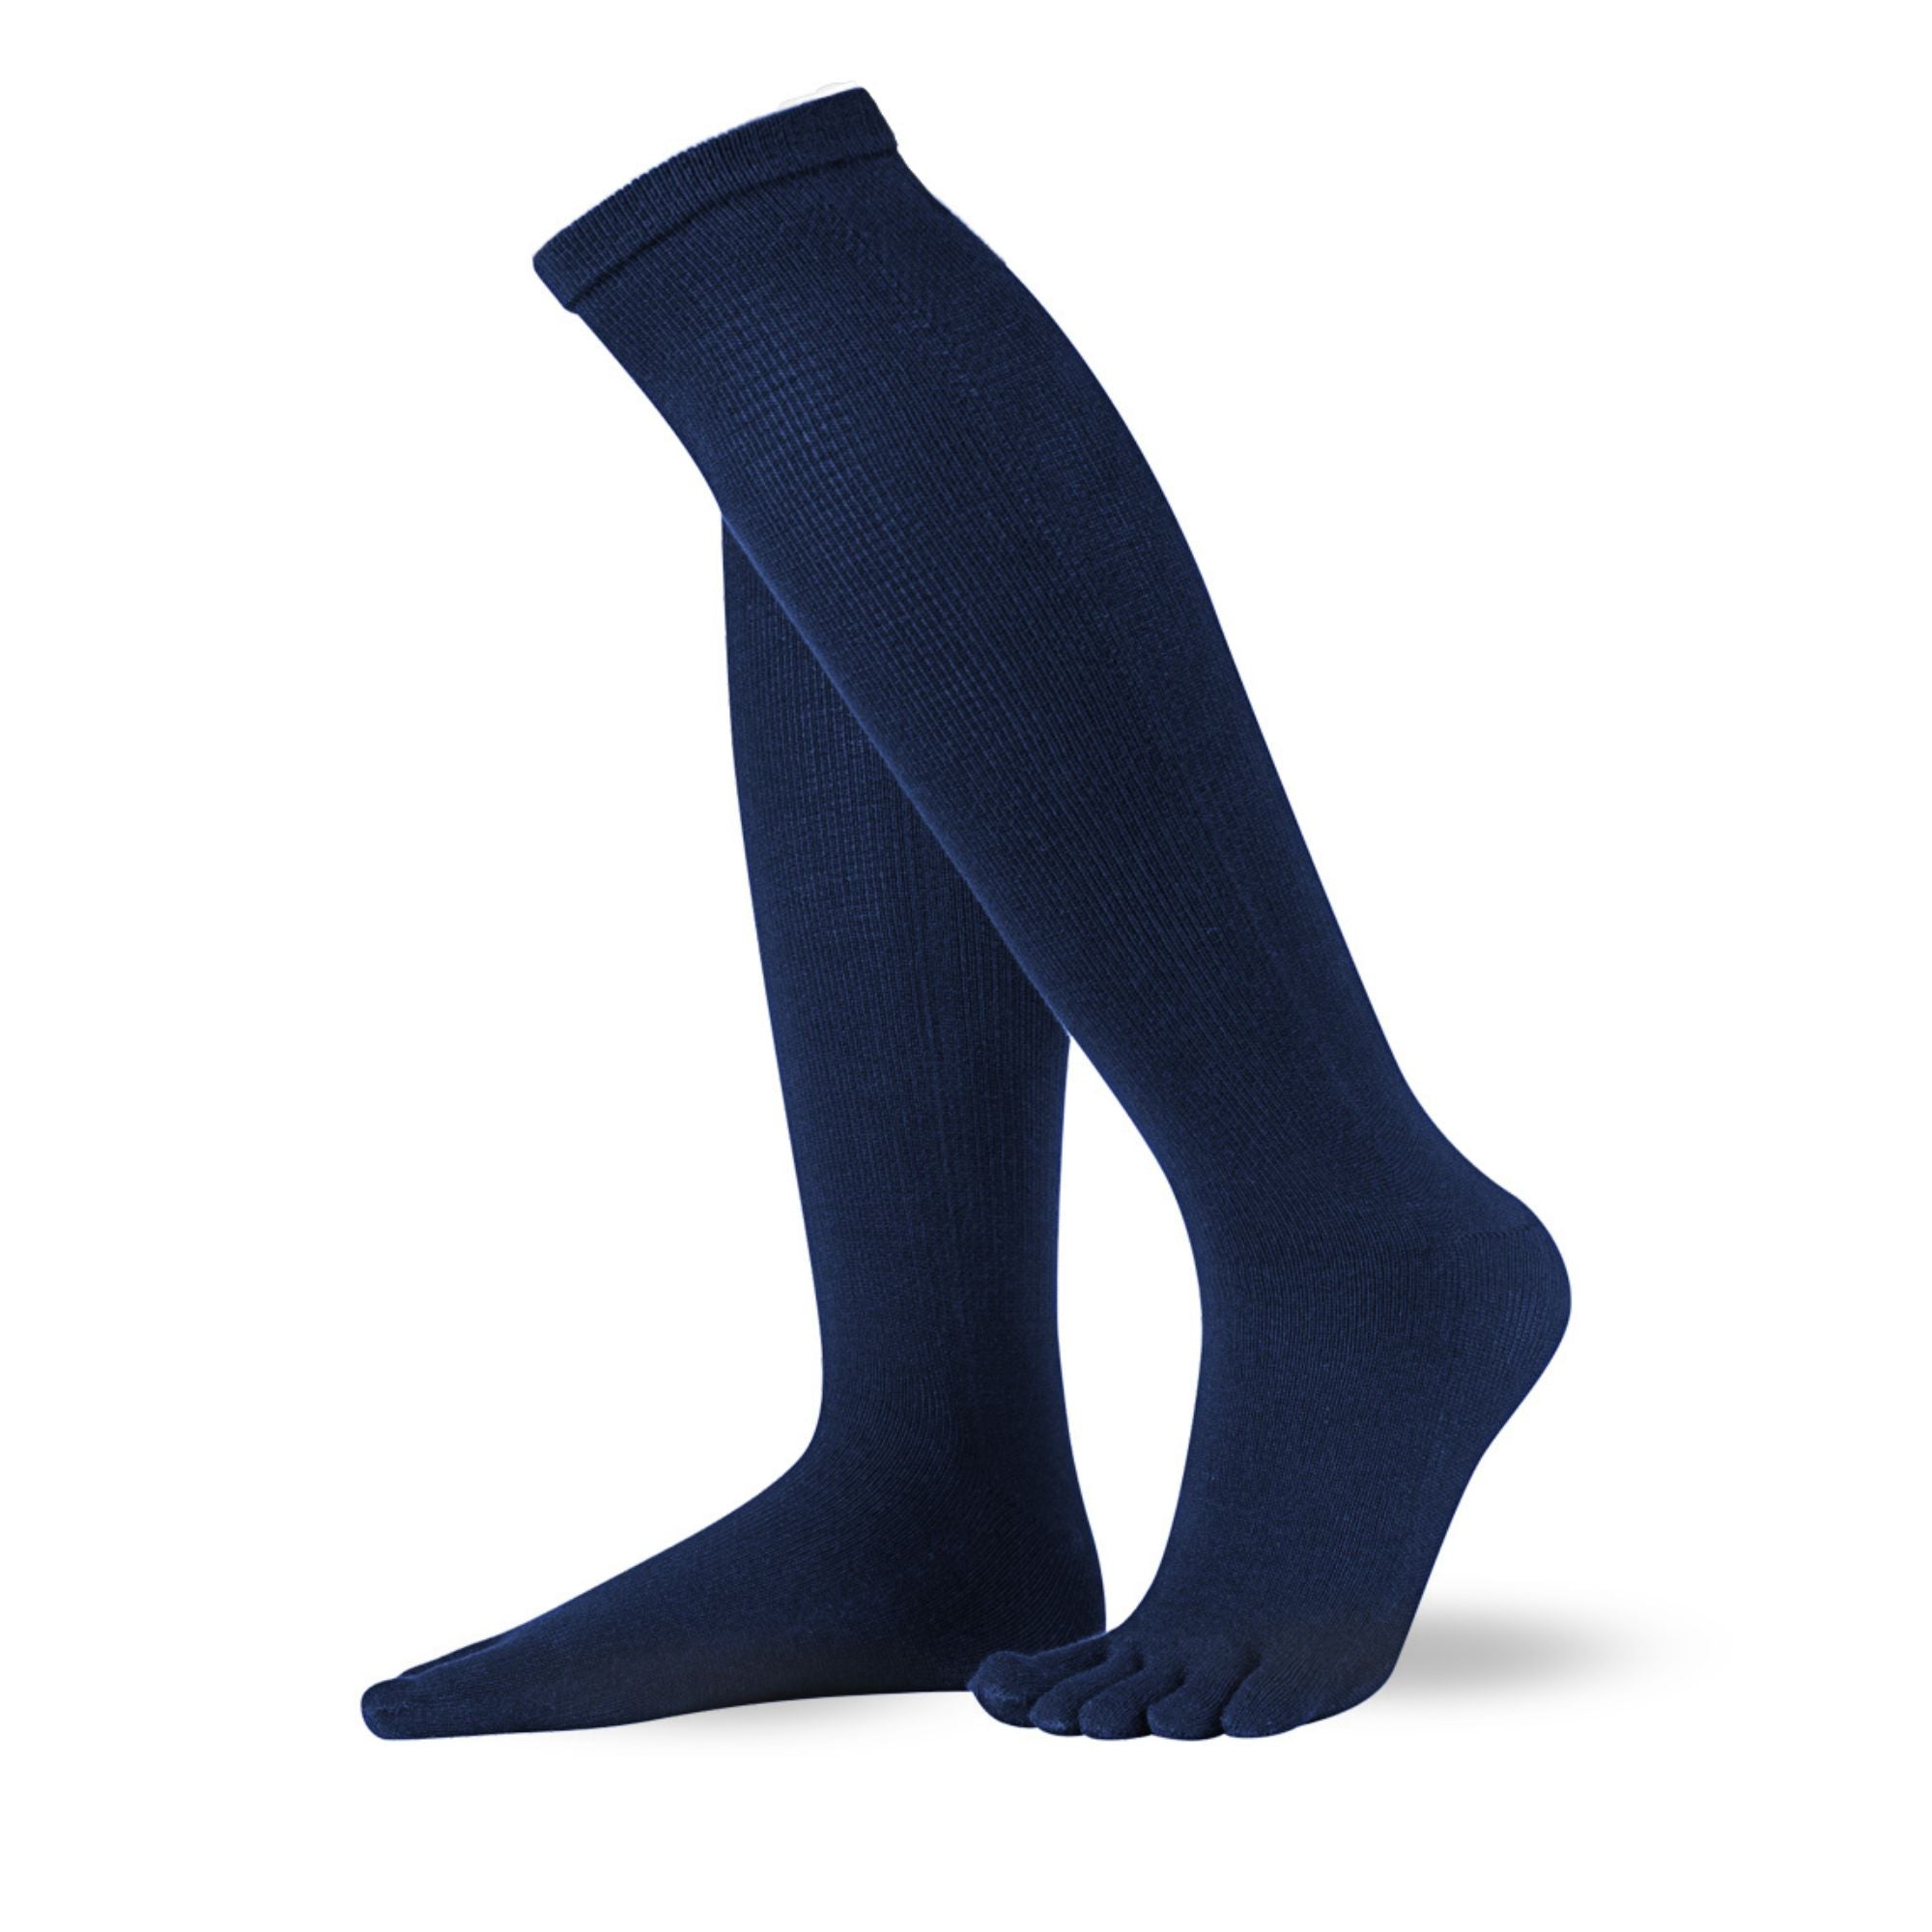 Knitido Essentials Calcetines de algodón hasta la rodilla de lado en azul marino